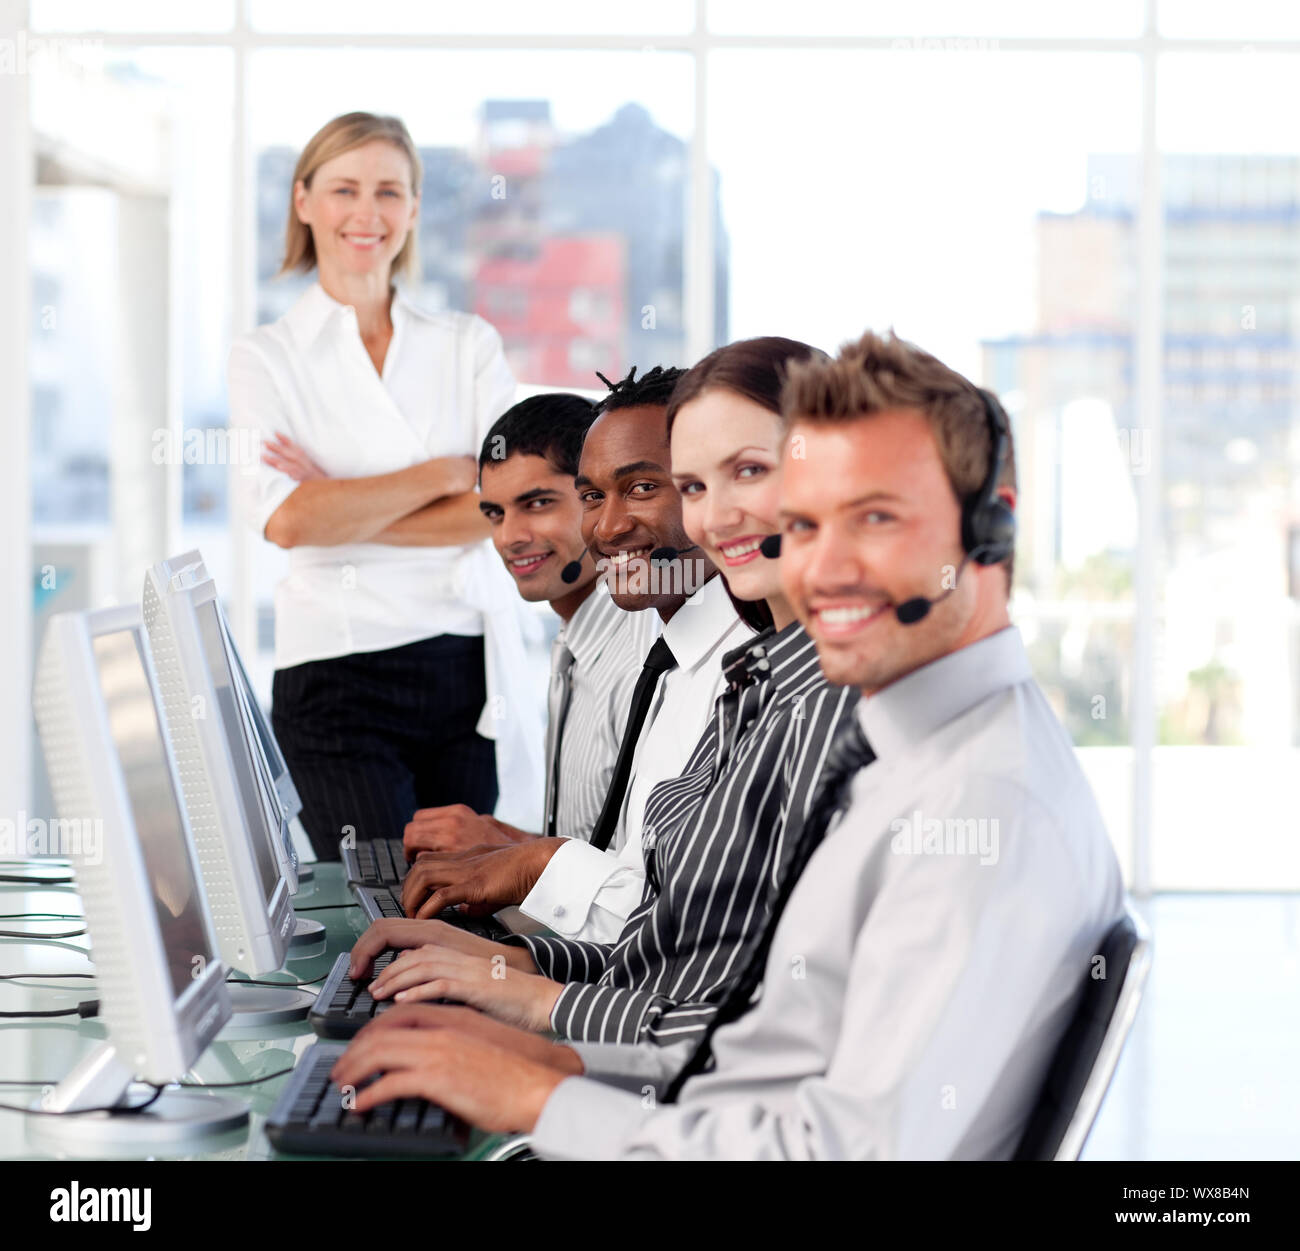 Strahlende Anführerin Managingher Team in einem Callcenter Stockfoto